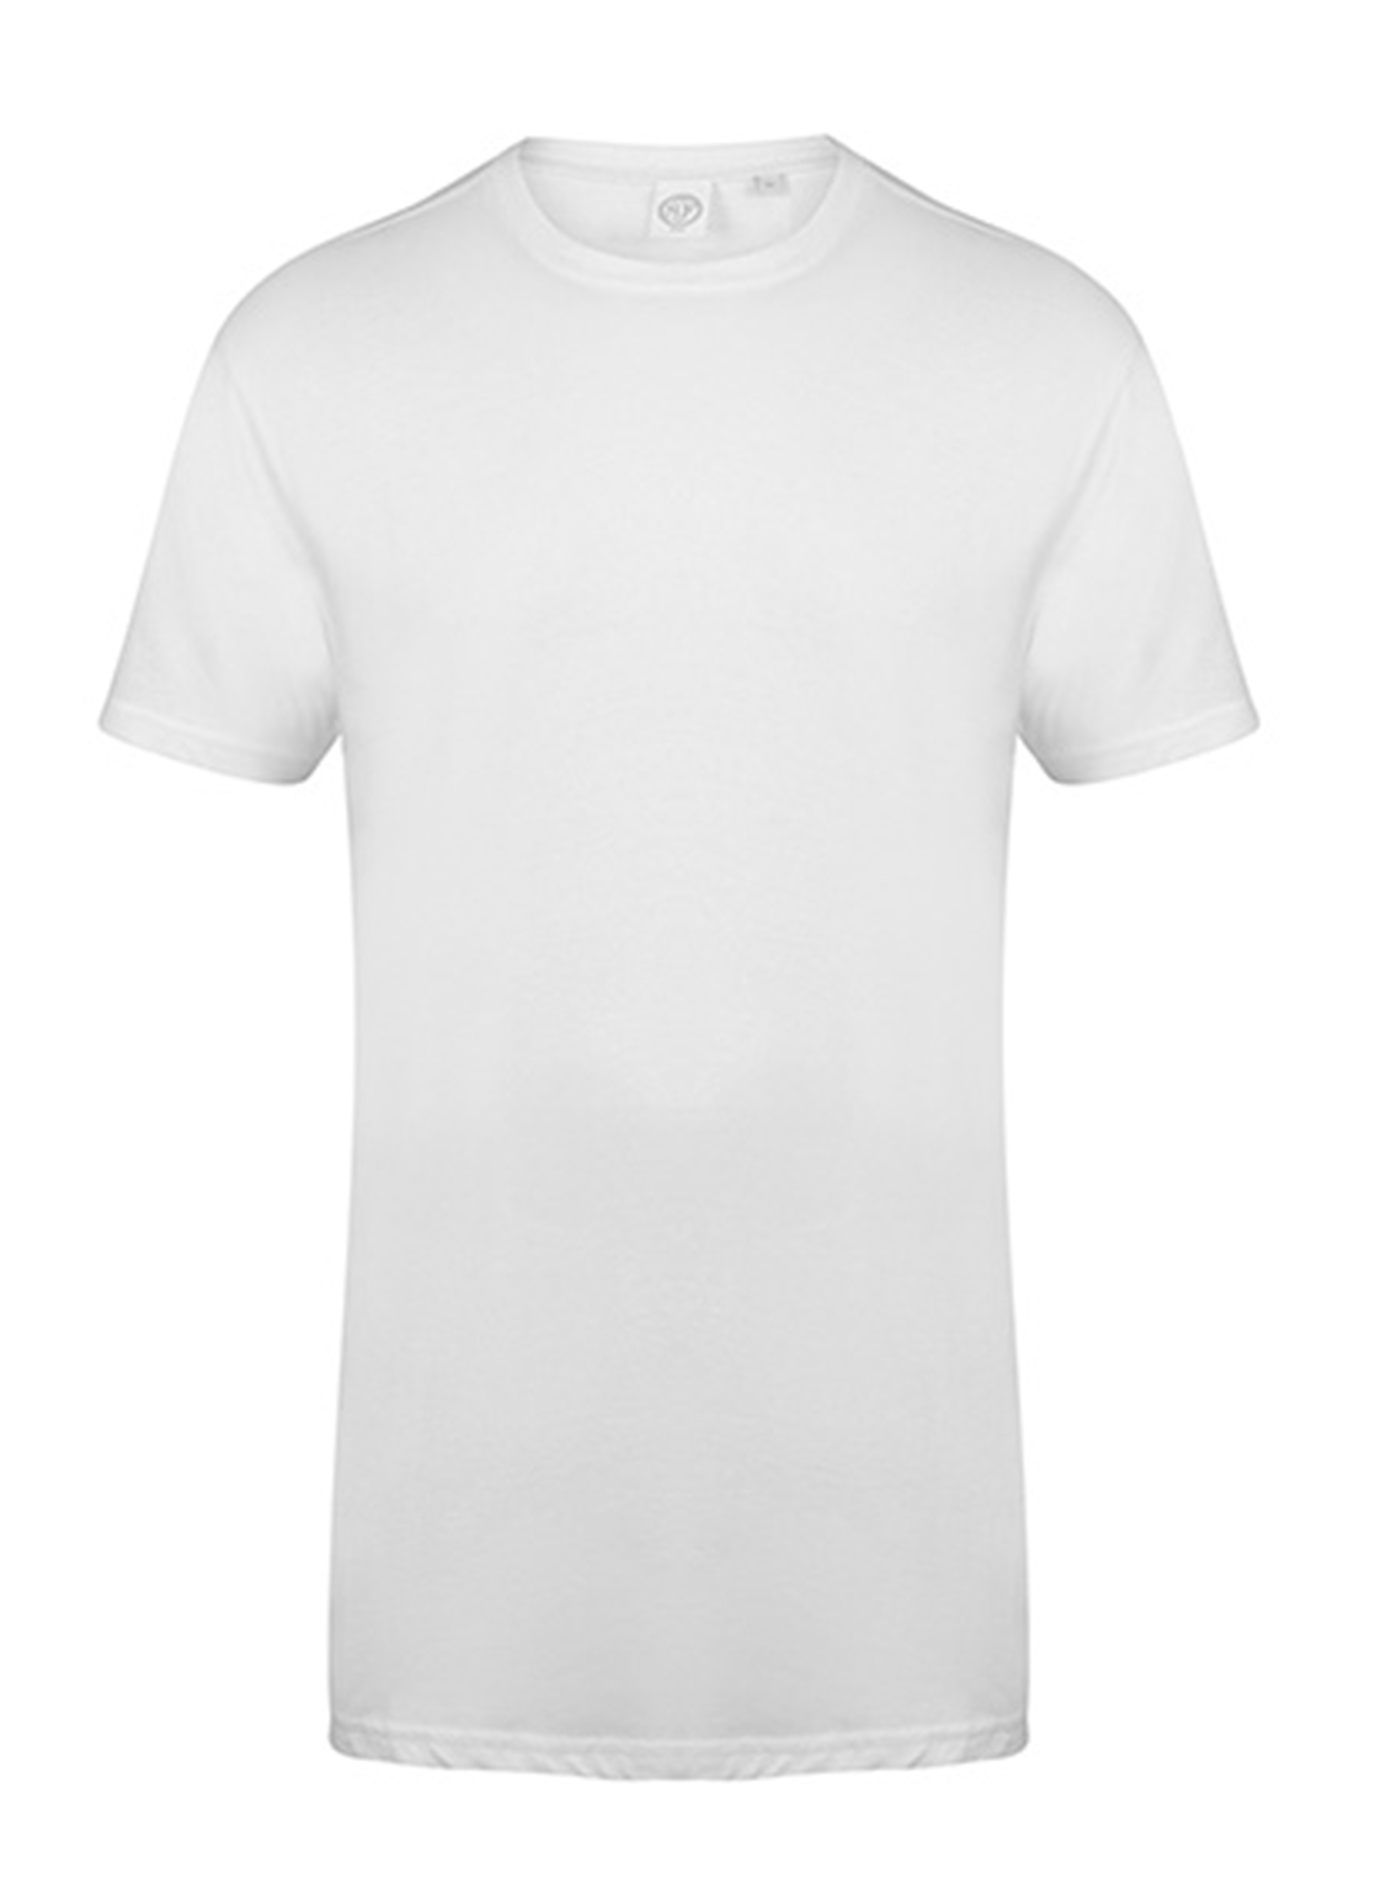 Pánské tričko s prodlouženým zadním dílem Skinnifit Longline T - Bílá XXL